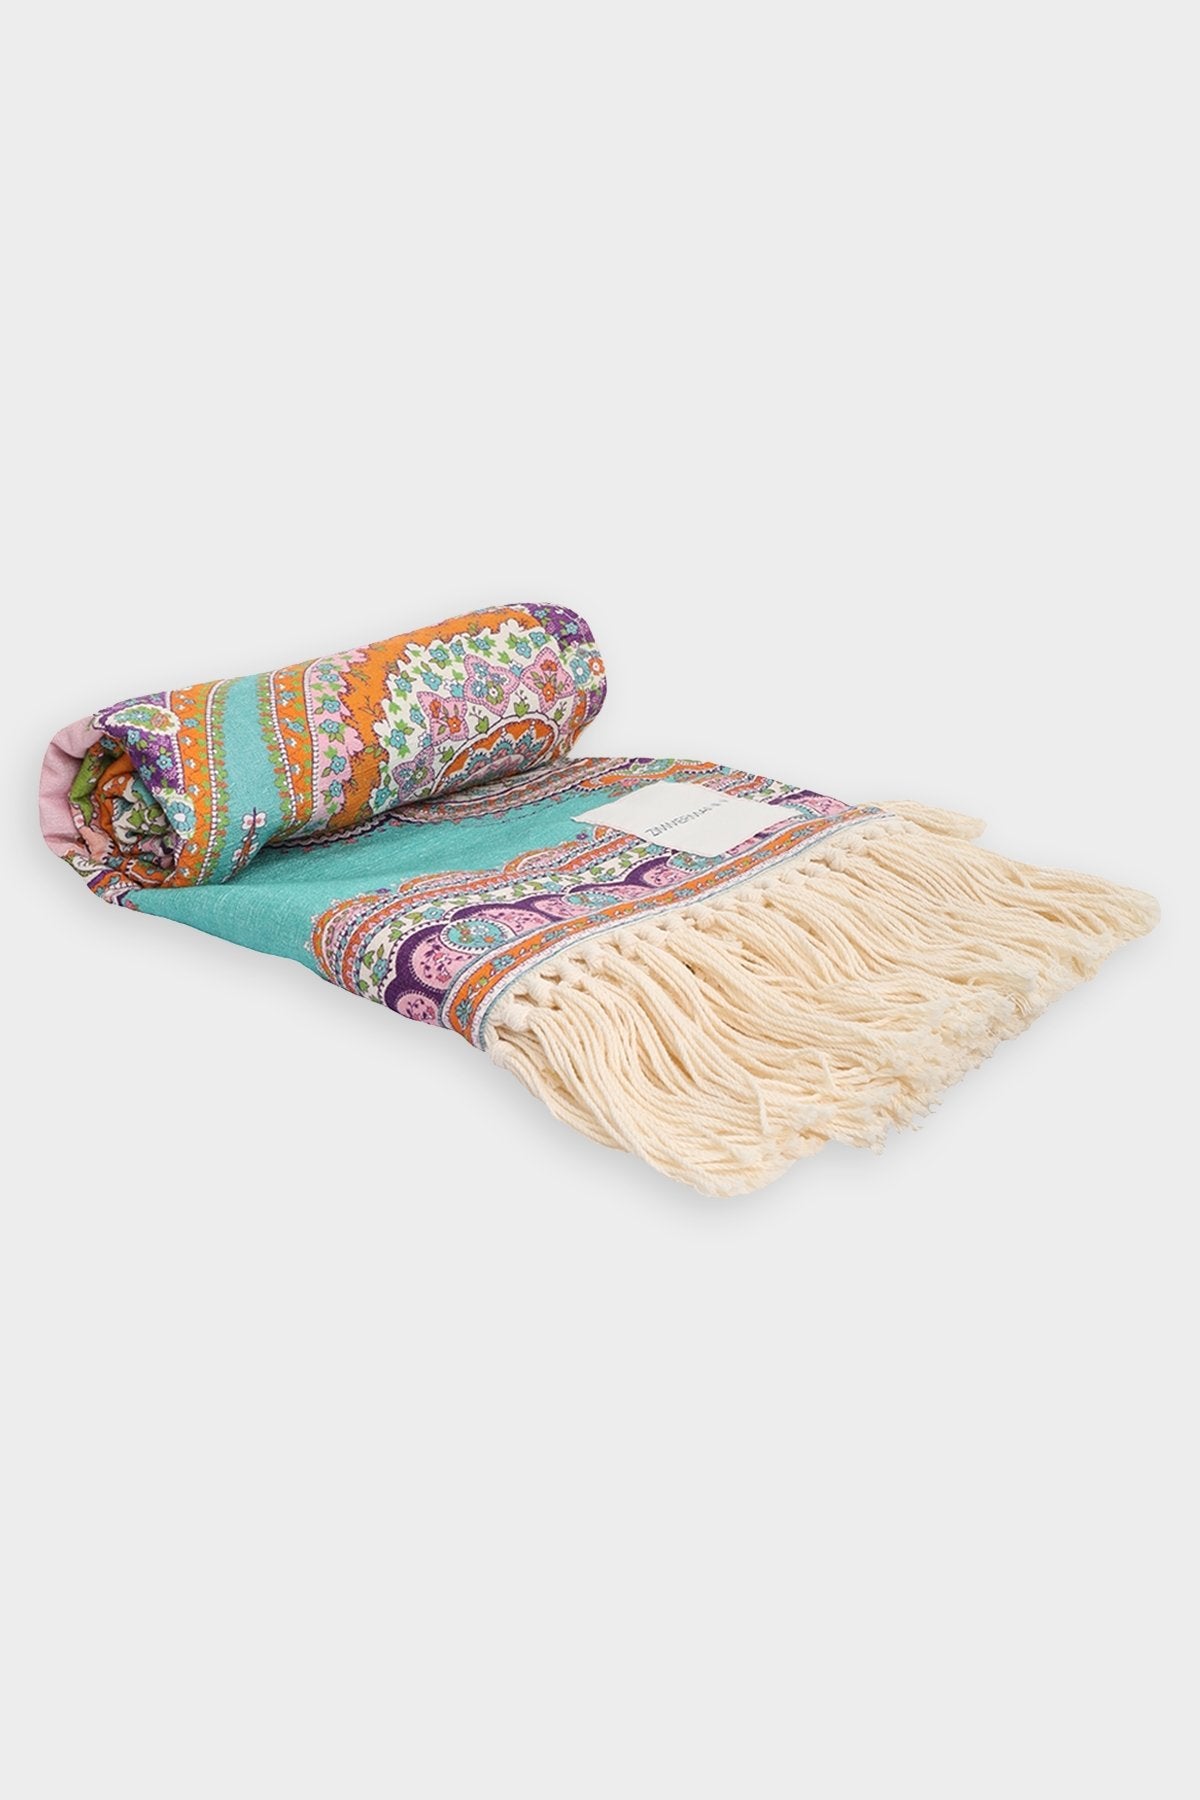 Textured Towel in Daisy Paisley - shop-olivia.com